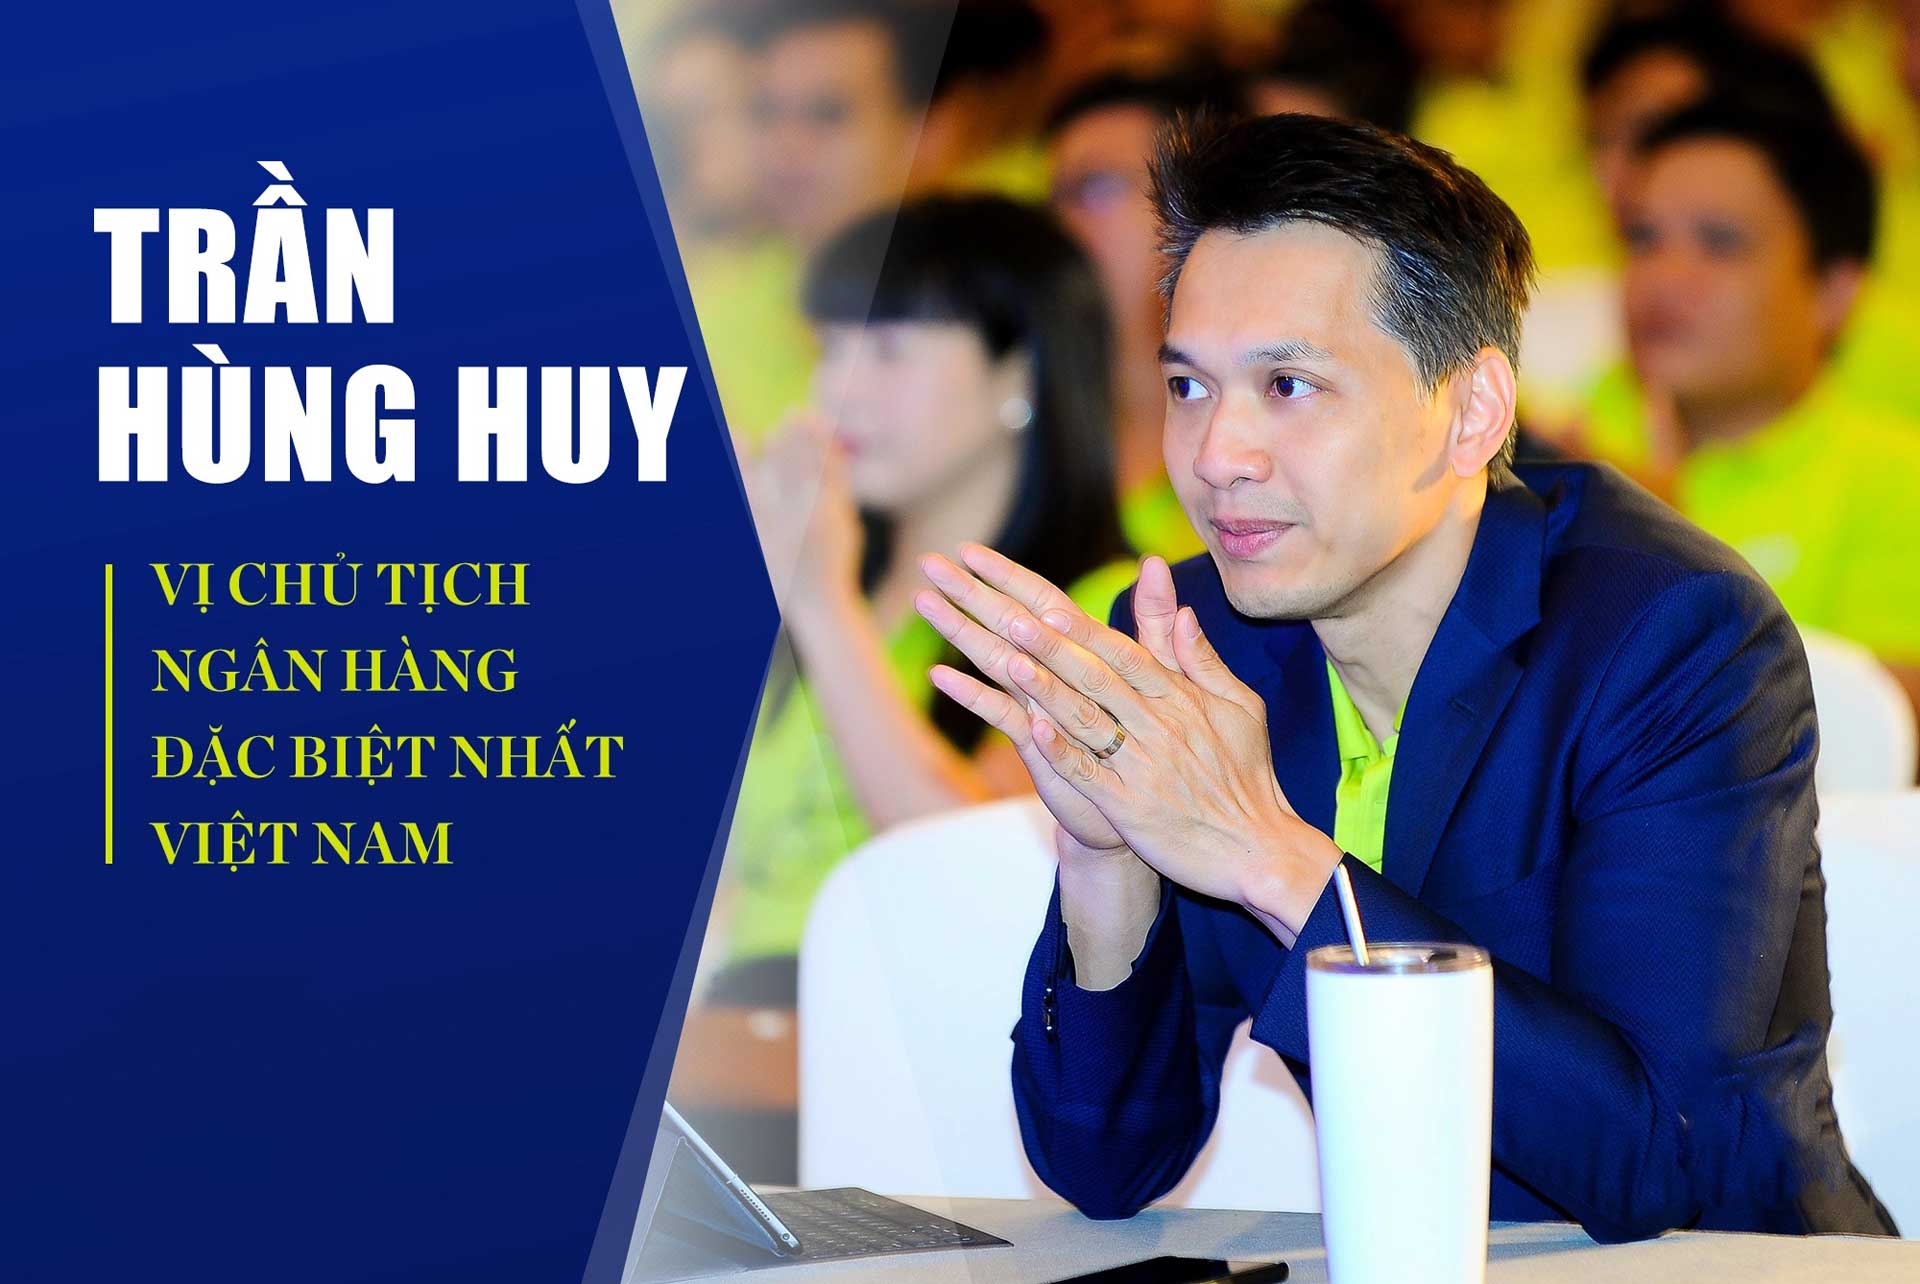 Ong Tran Hung Huy Chu tich ngan hang ACB - Trần Hùng Huy là ai? Chủ tịch Hội đồng quản trị Ngân hàng ACB